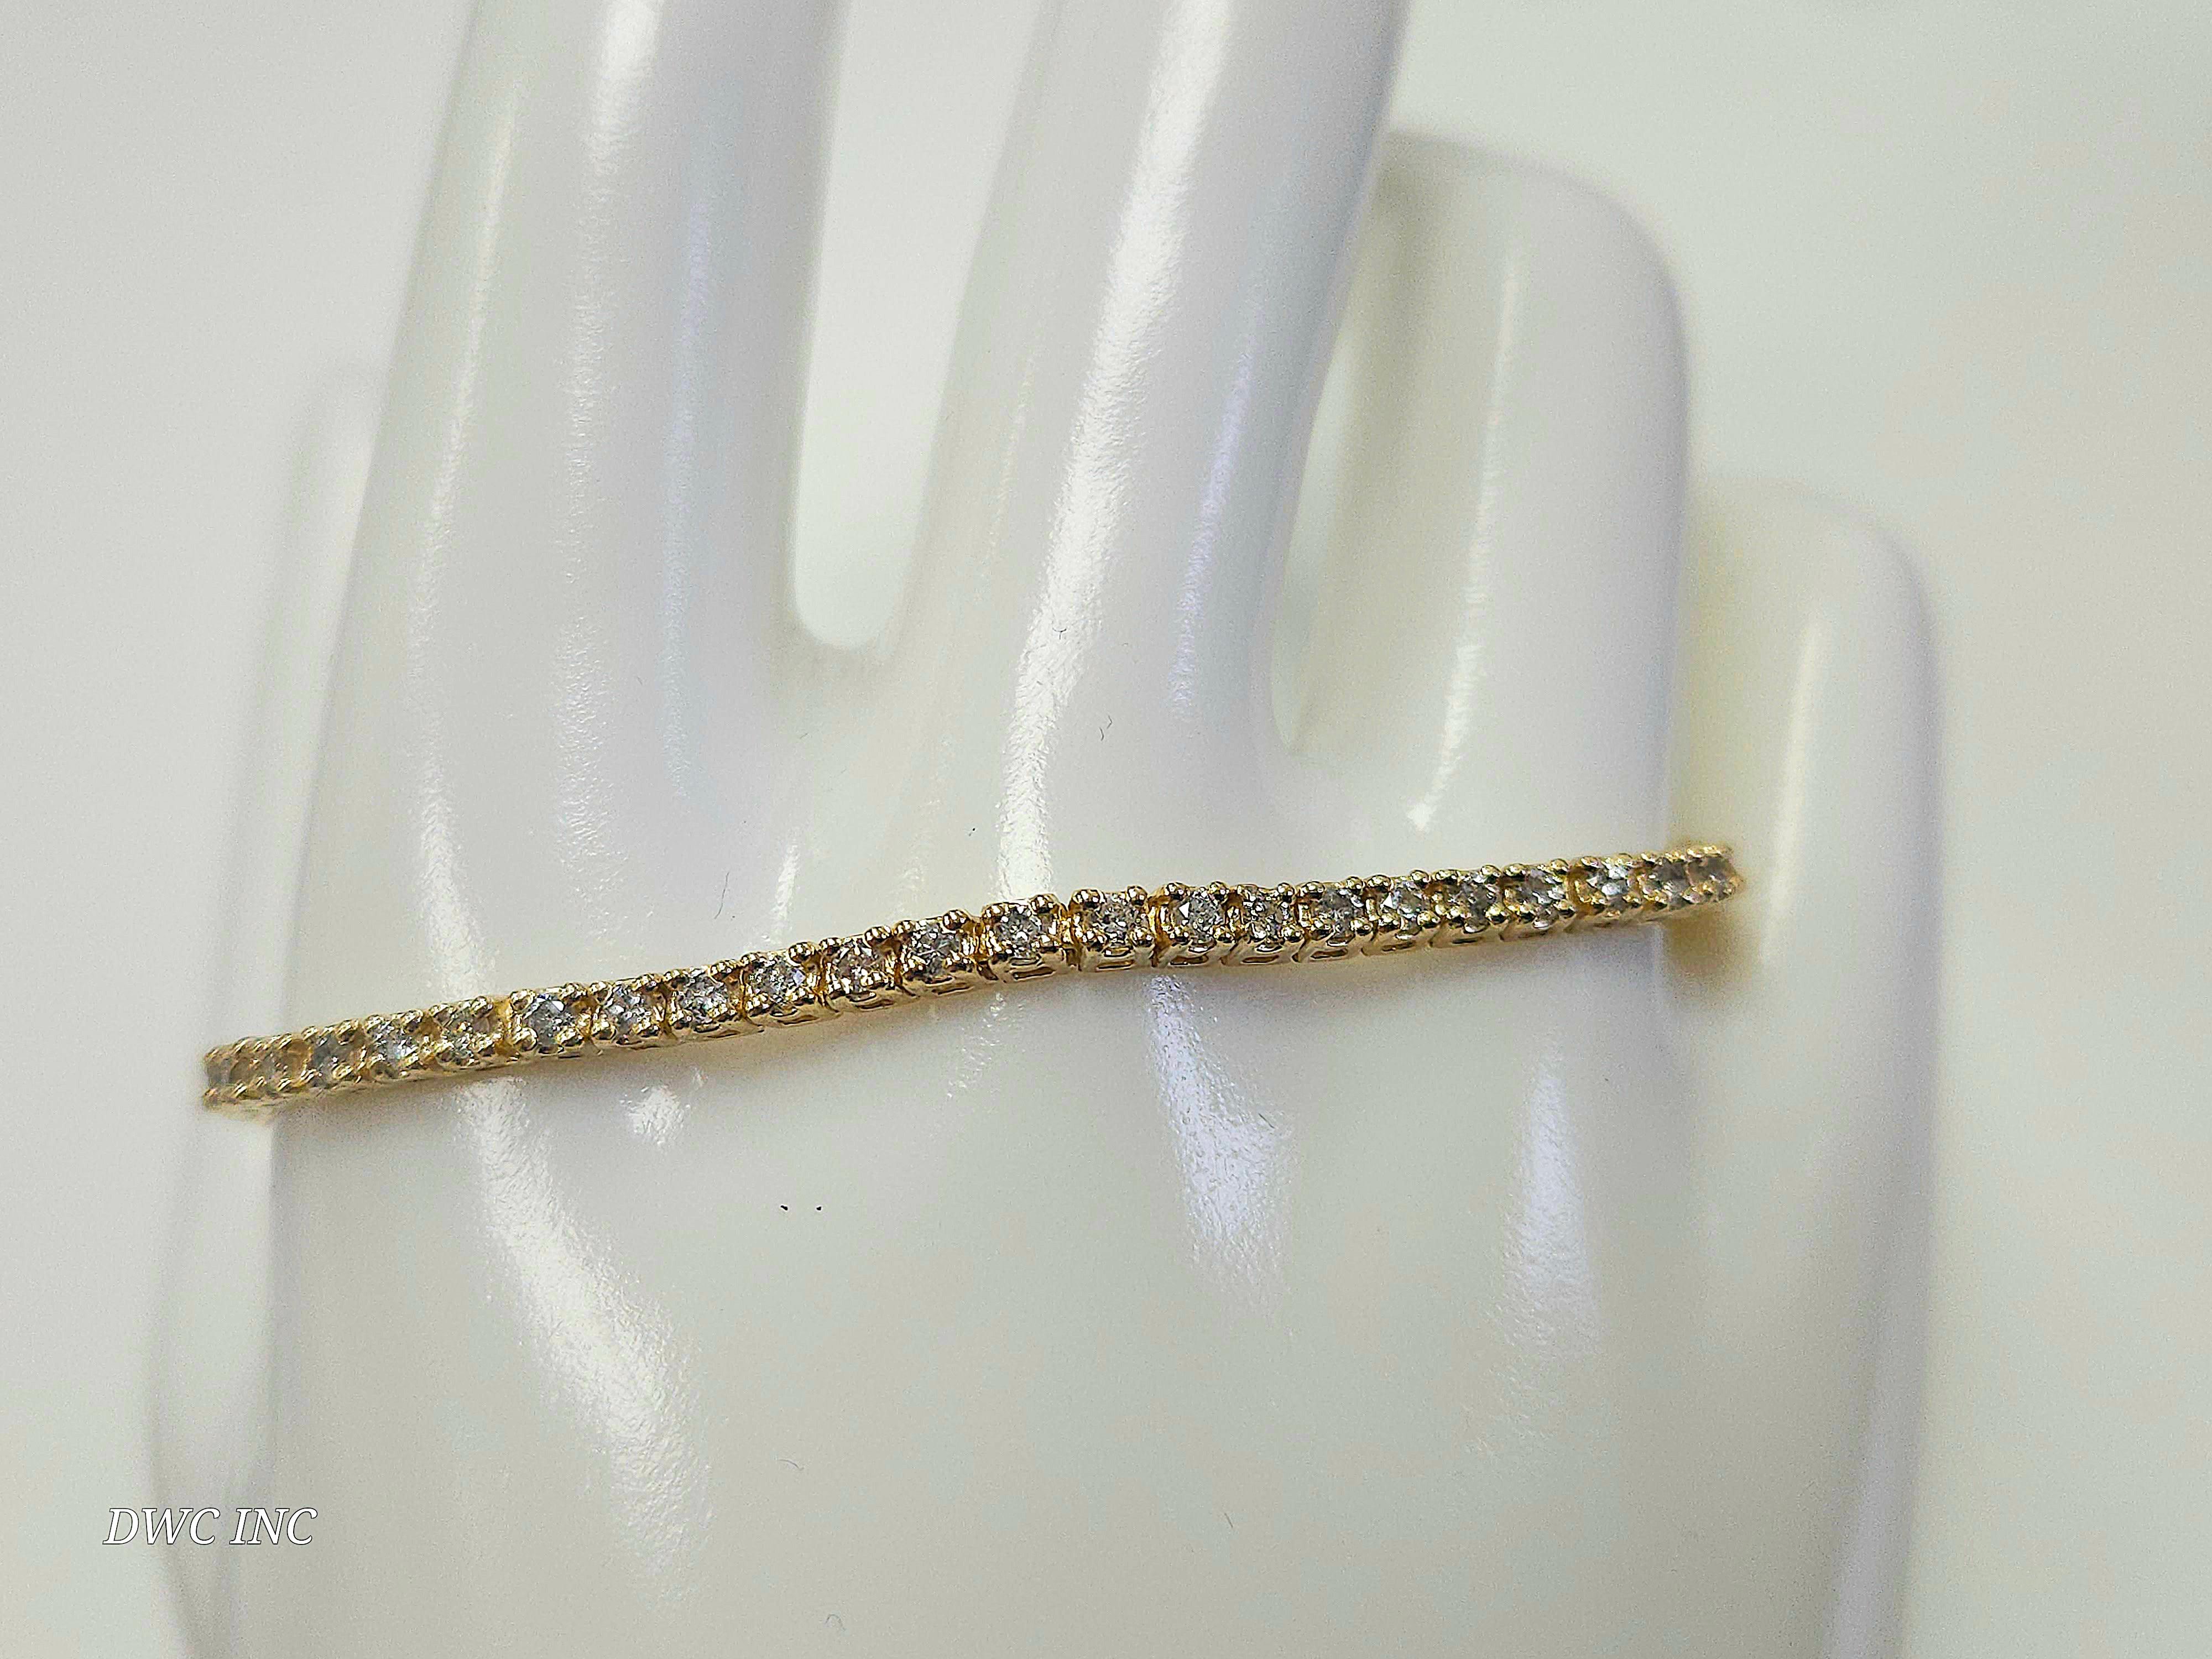 1.85 Karat Natürliche Diamanten Tennisarmband rund-brillant Schliff  14k Gelbgold. 
7 Zoll. 65Stück Durchschnittlich H-,SI  2,4 mm breit. Sehr glänzend 8.25 Gramm.

*Kostenloser Versand innerhalb der U.S.A.